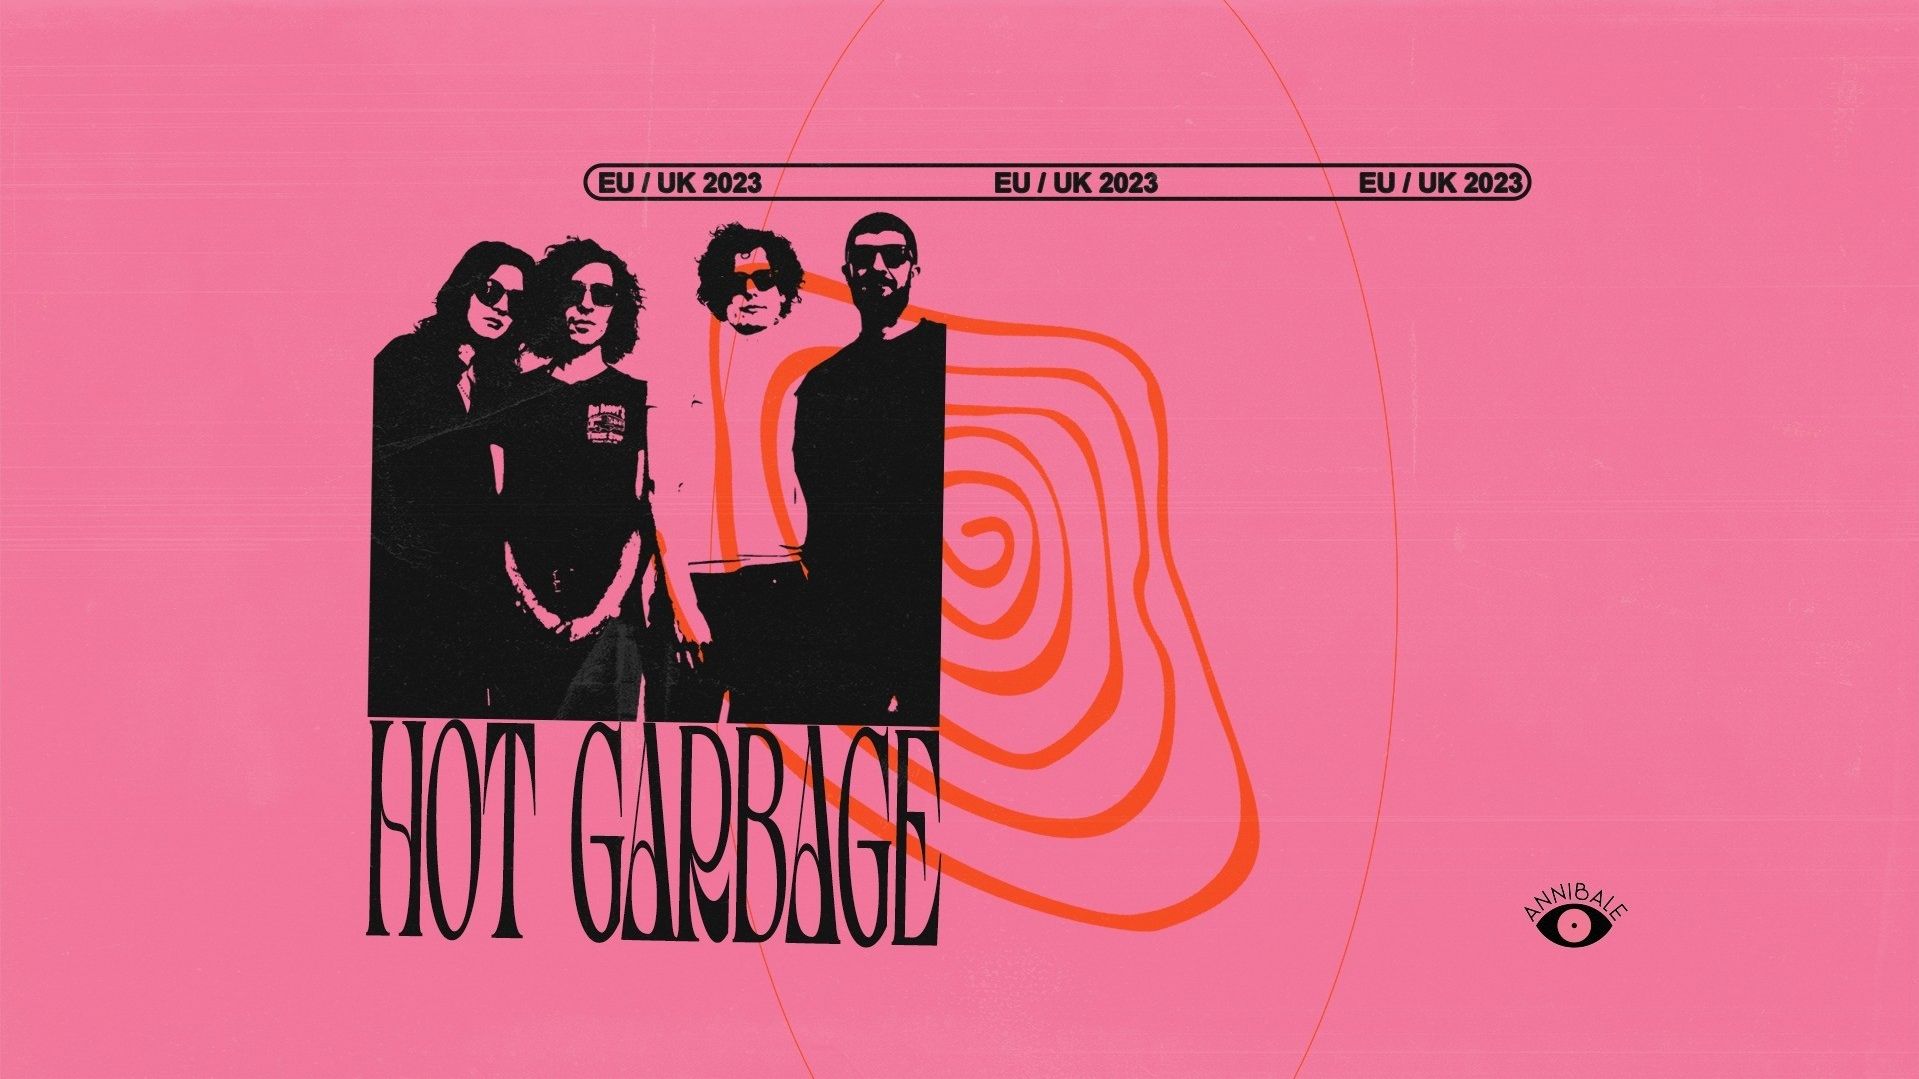 Hot Garbage (motorik krautrock / Toronto)